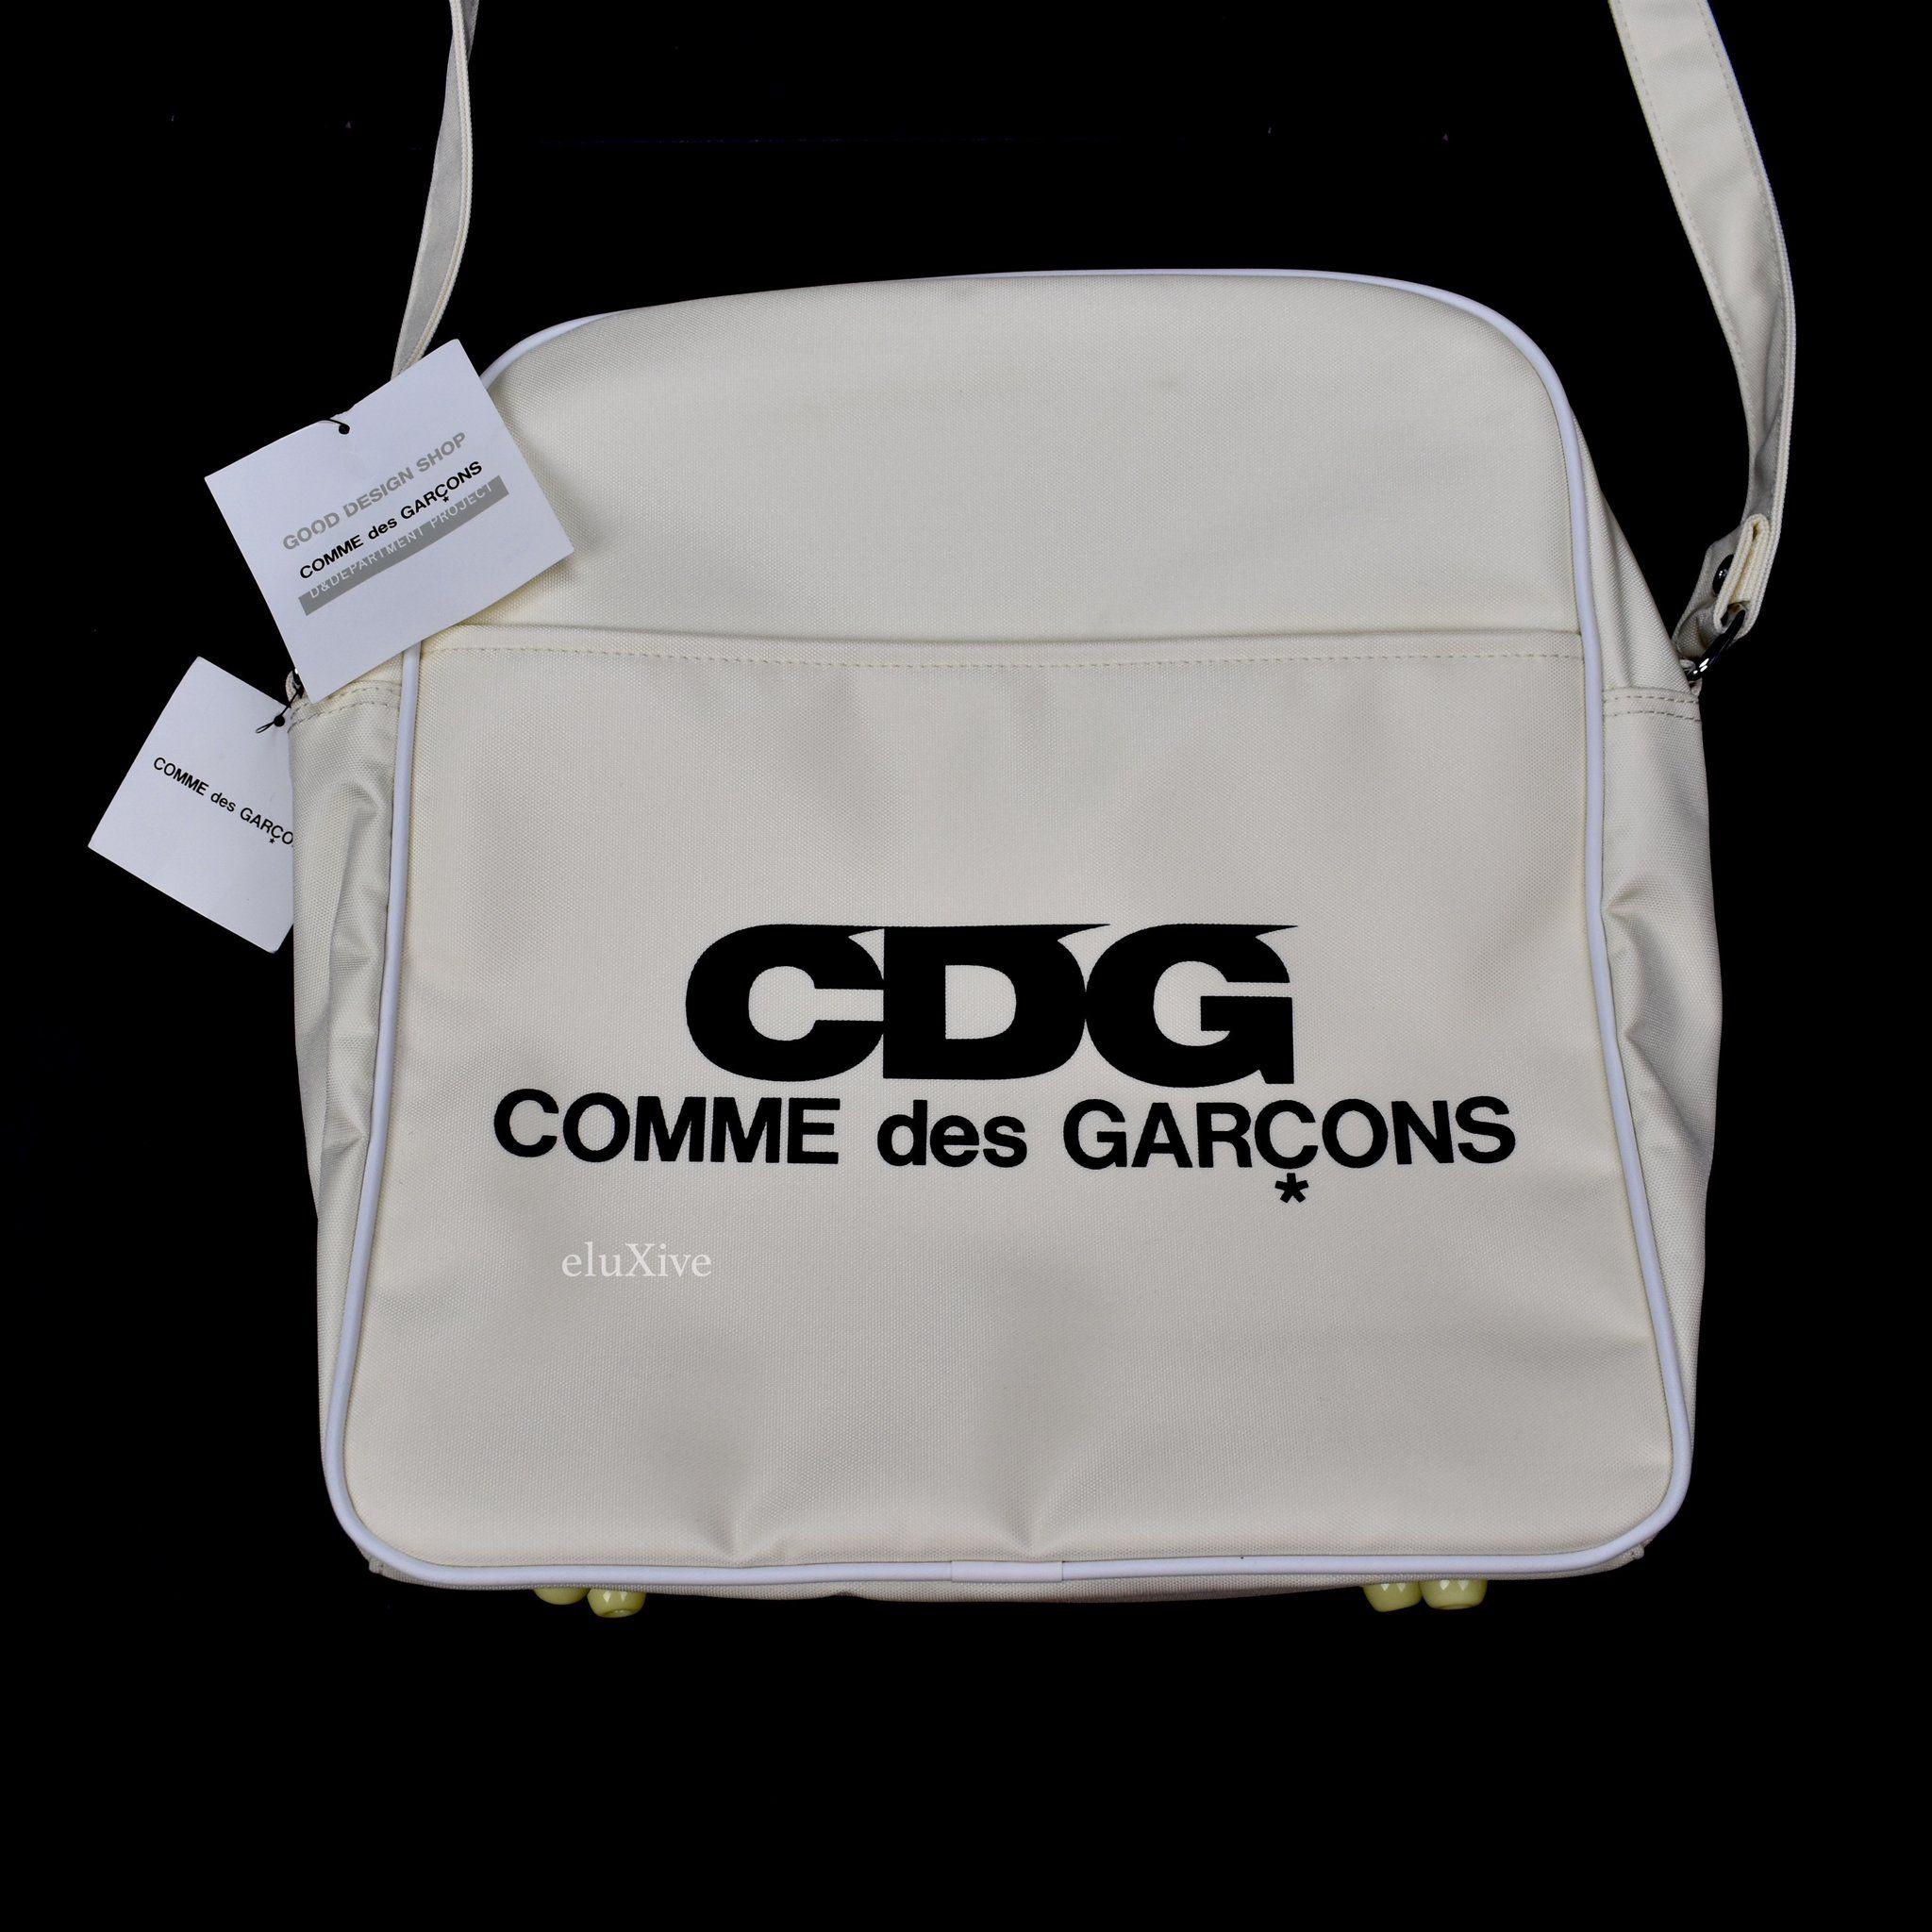 Comme Des Garcons CDG Logo - Comme des Garcons Good Design Shop - Ivory White CDG Logo ...